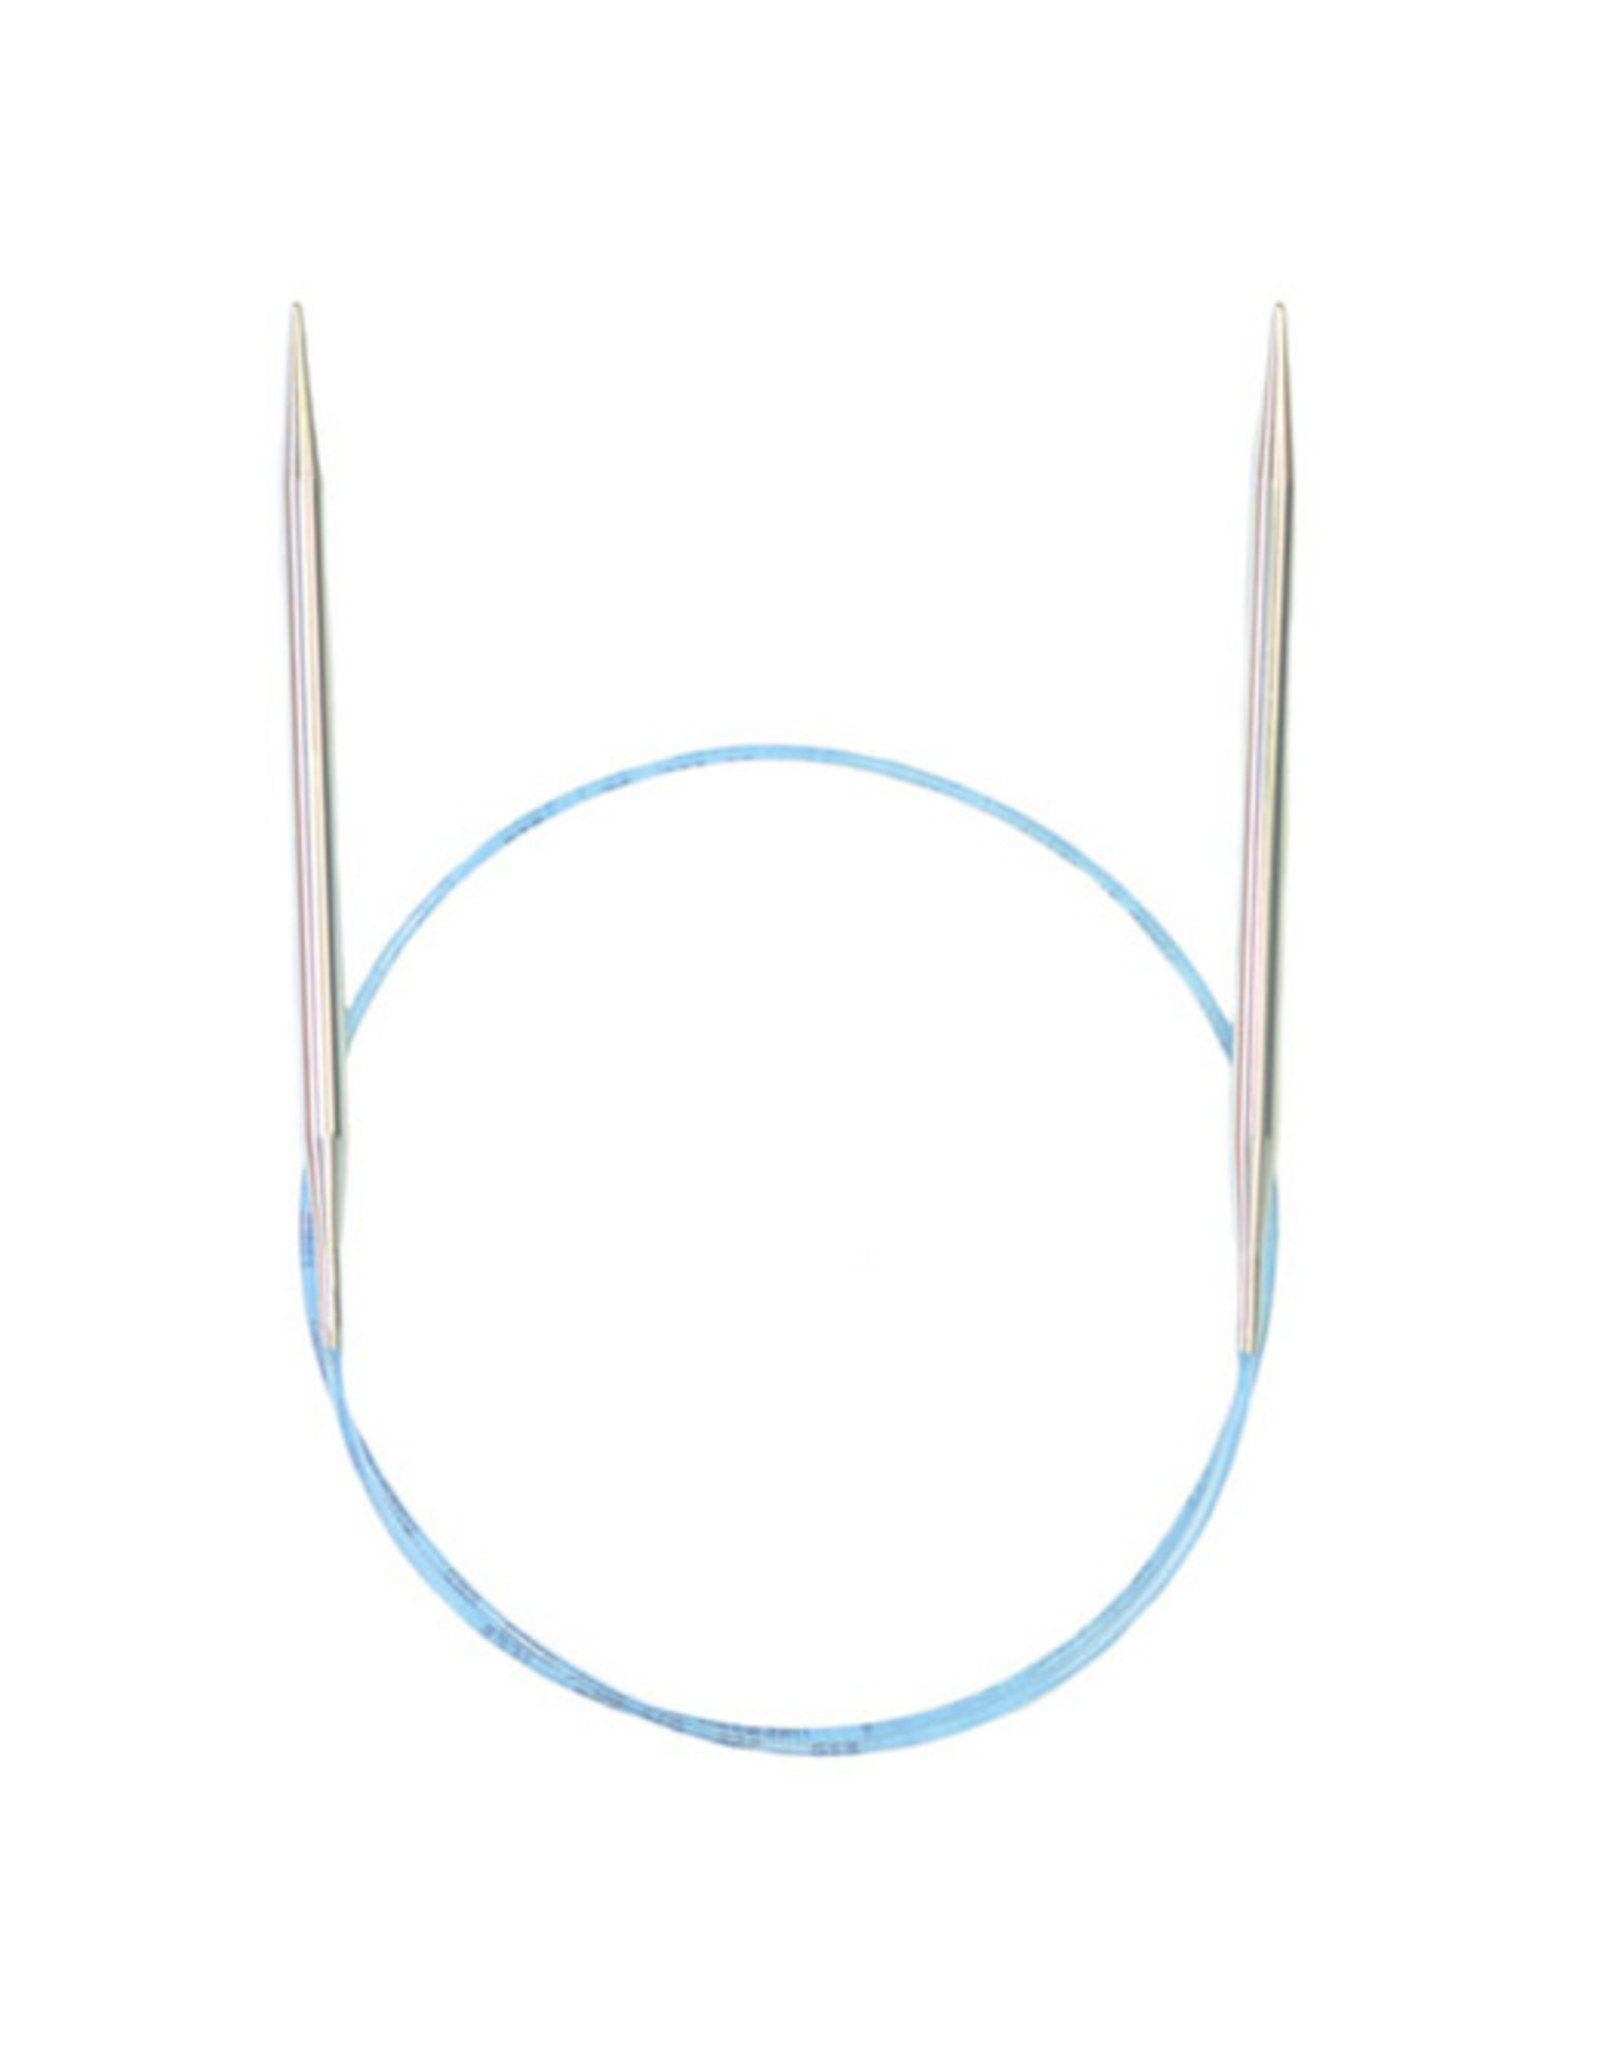 Addi Rockets 40" long circular needle size US 2